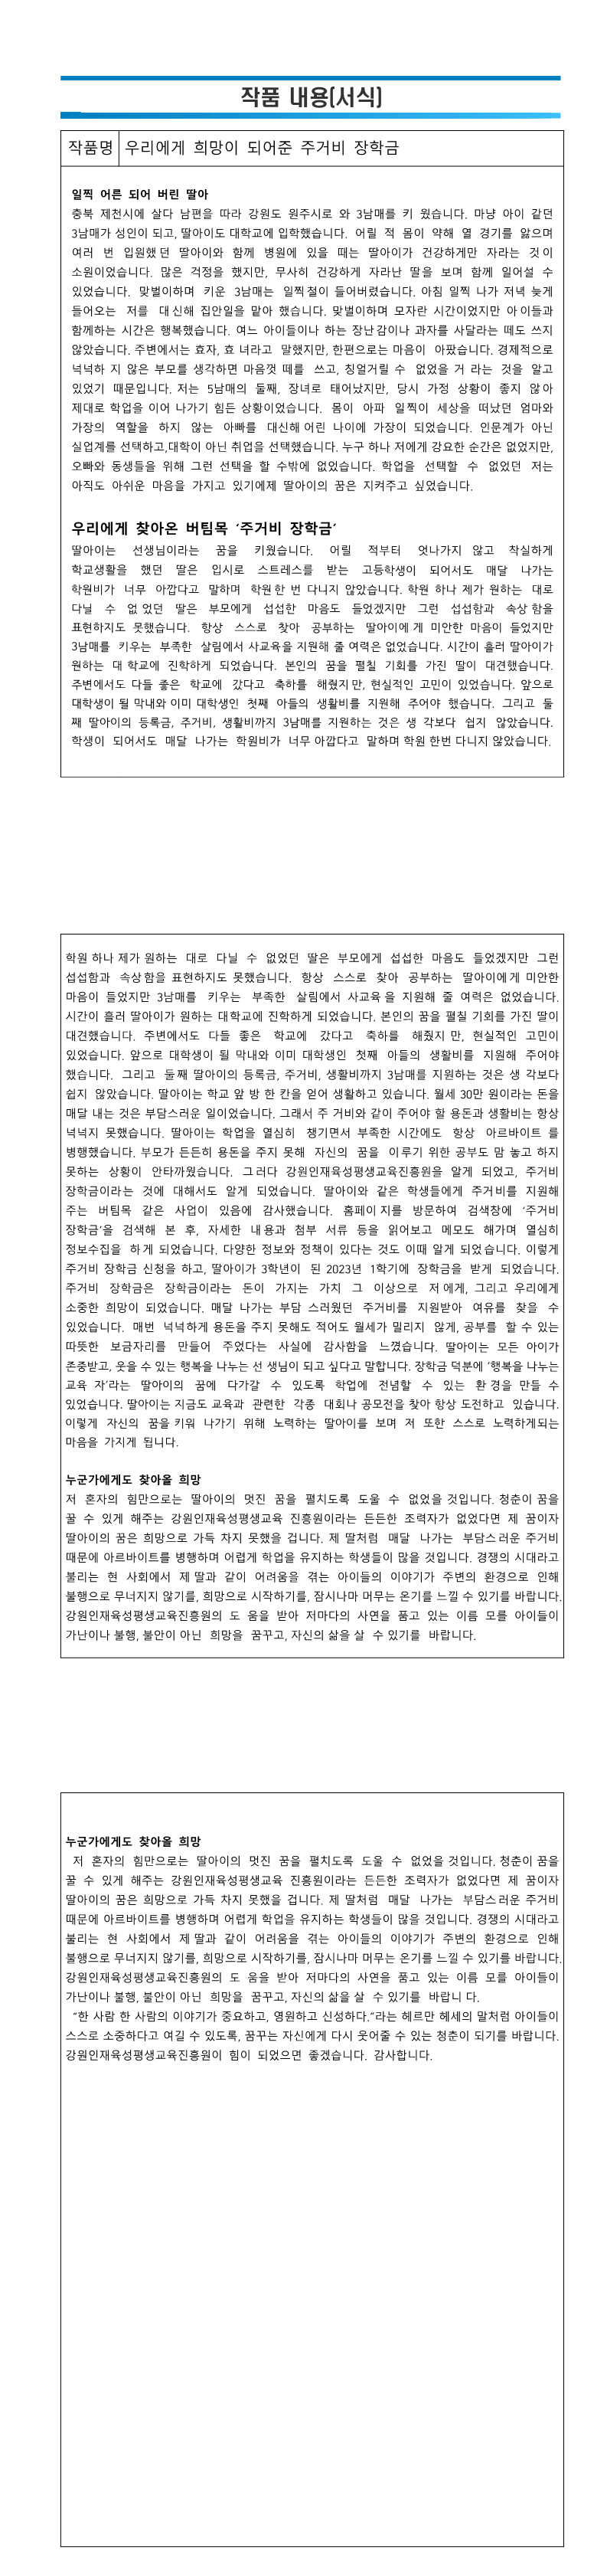 제7회 공모전_수기부문 최우수상.png